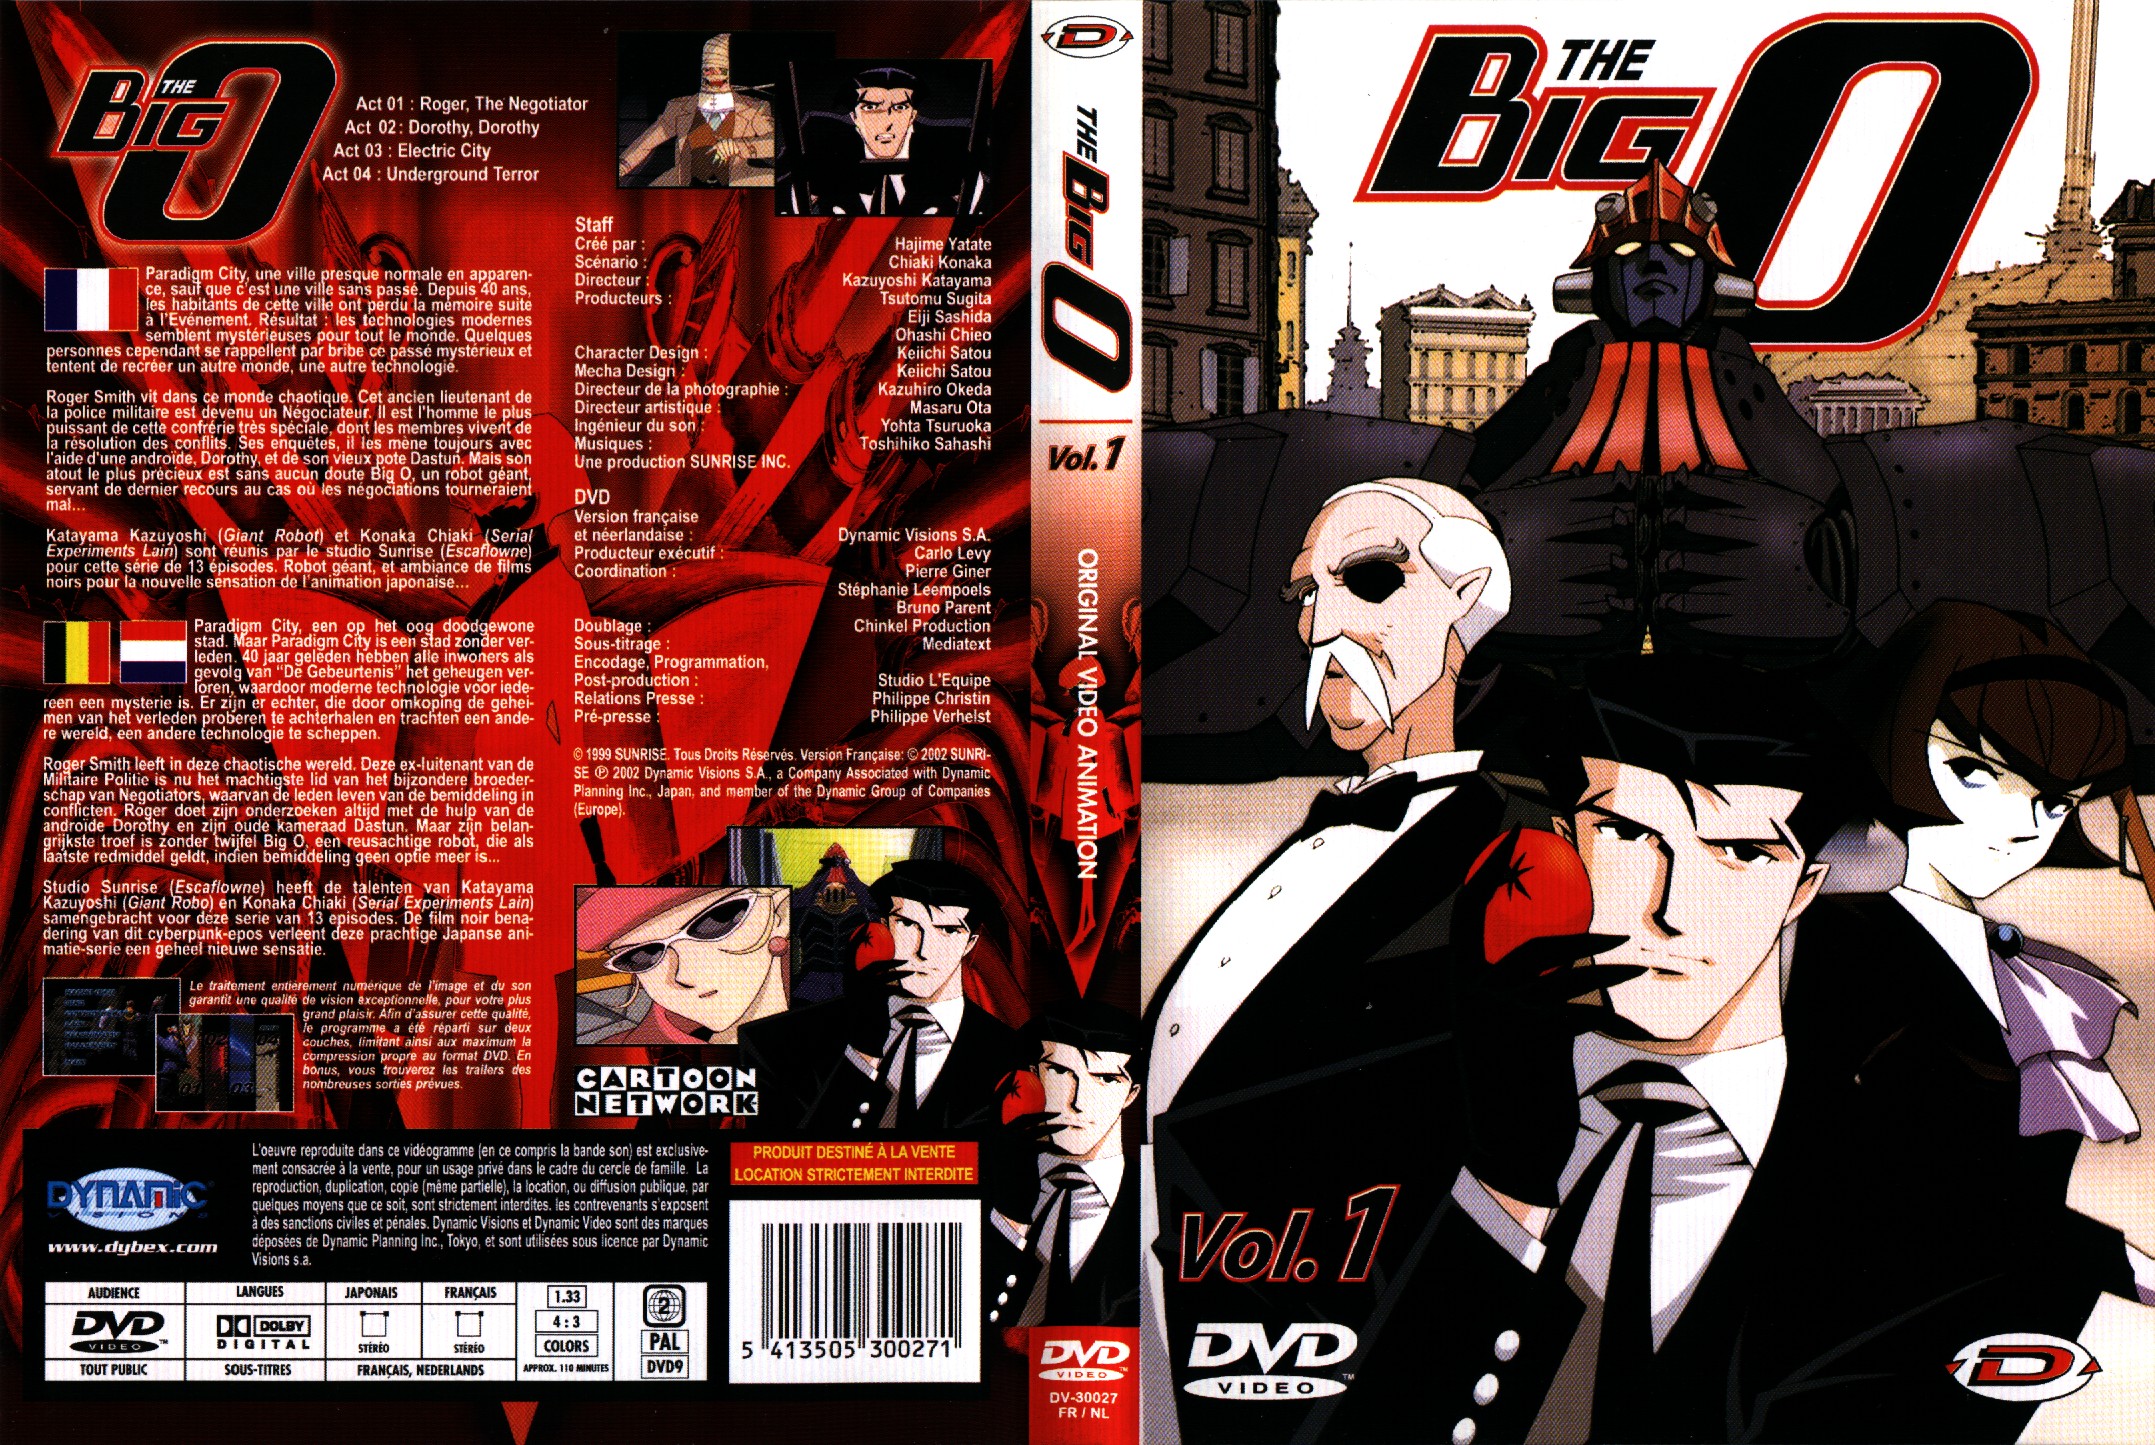 Jaquette DVD The big O vol 1